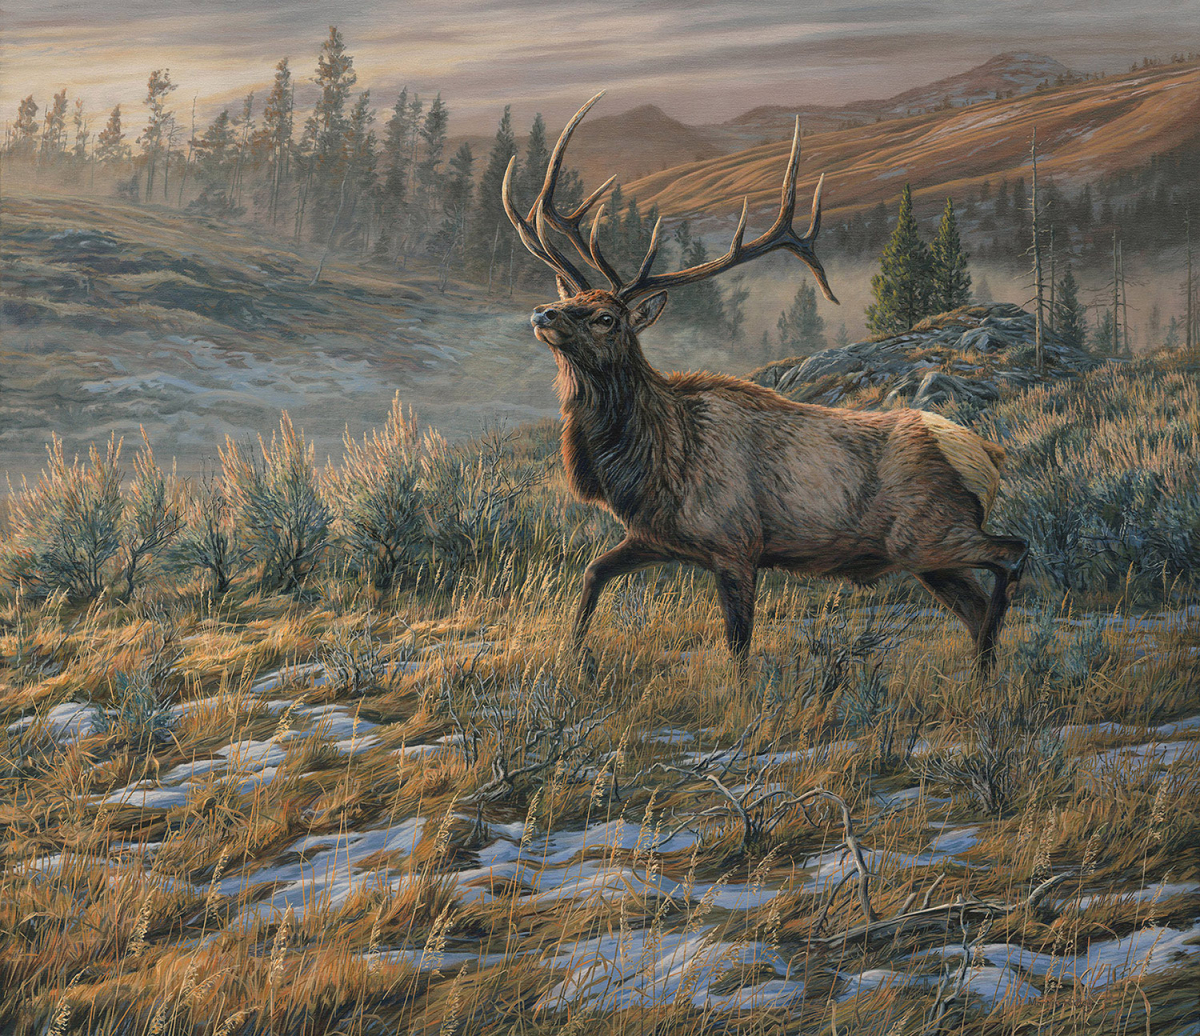 "Head Held High", Bull American Elk